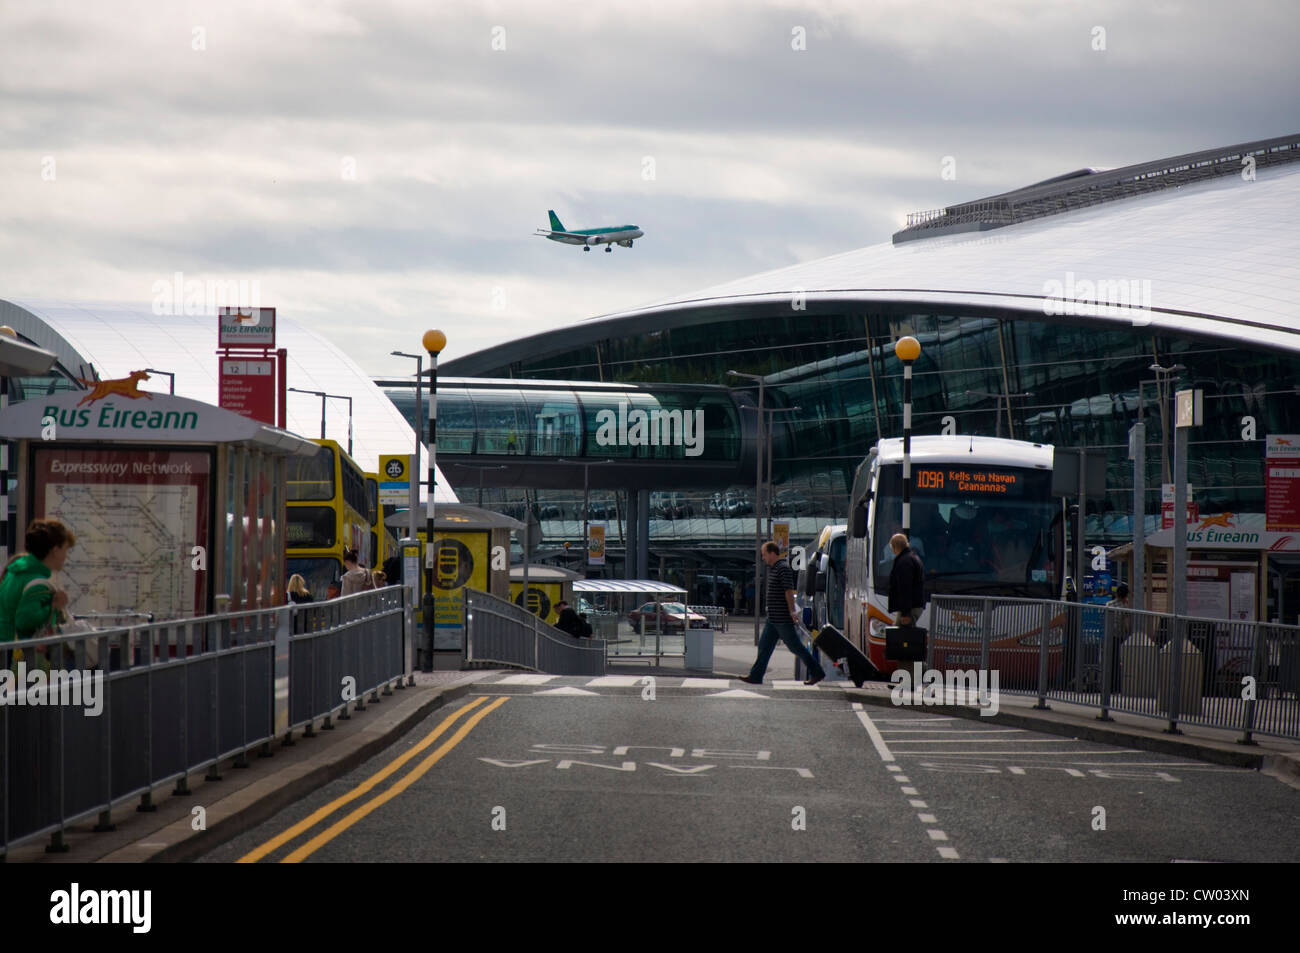 Aeroporto di Dublino un Aer Lingus piano terre dai due terminali Foto Stock